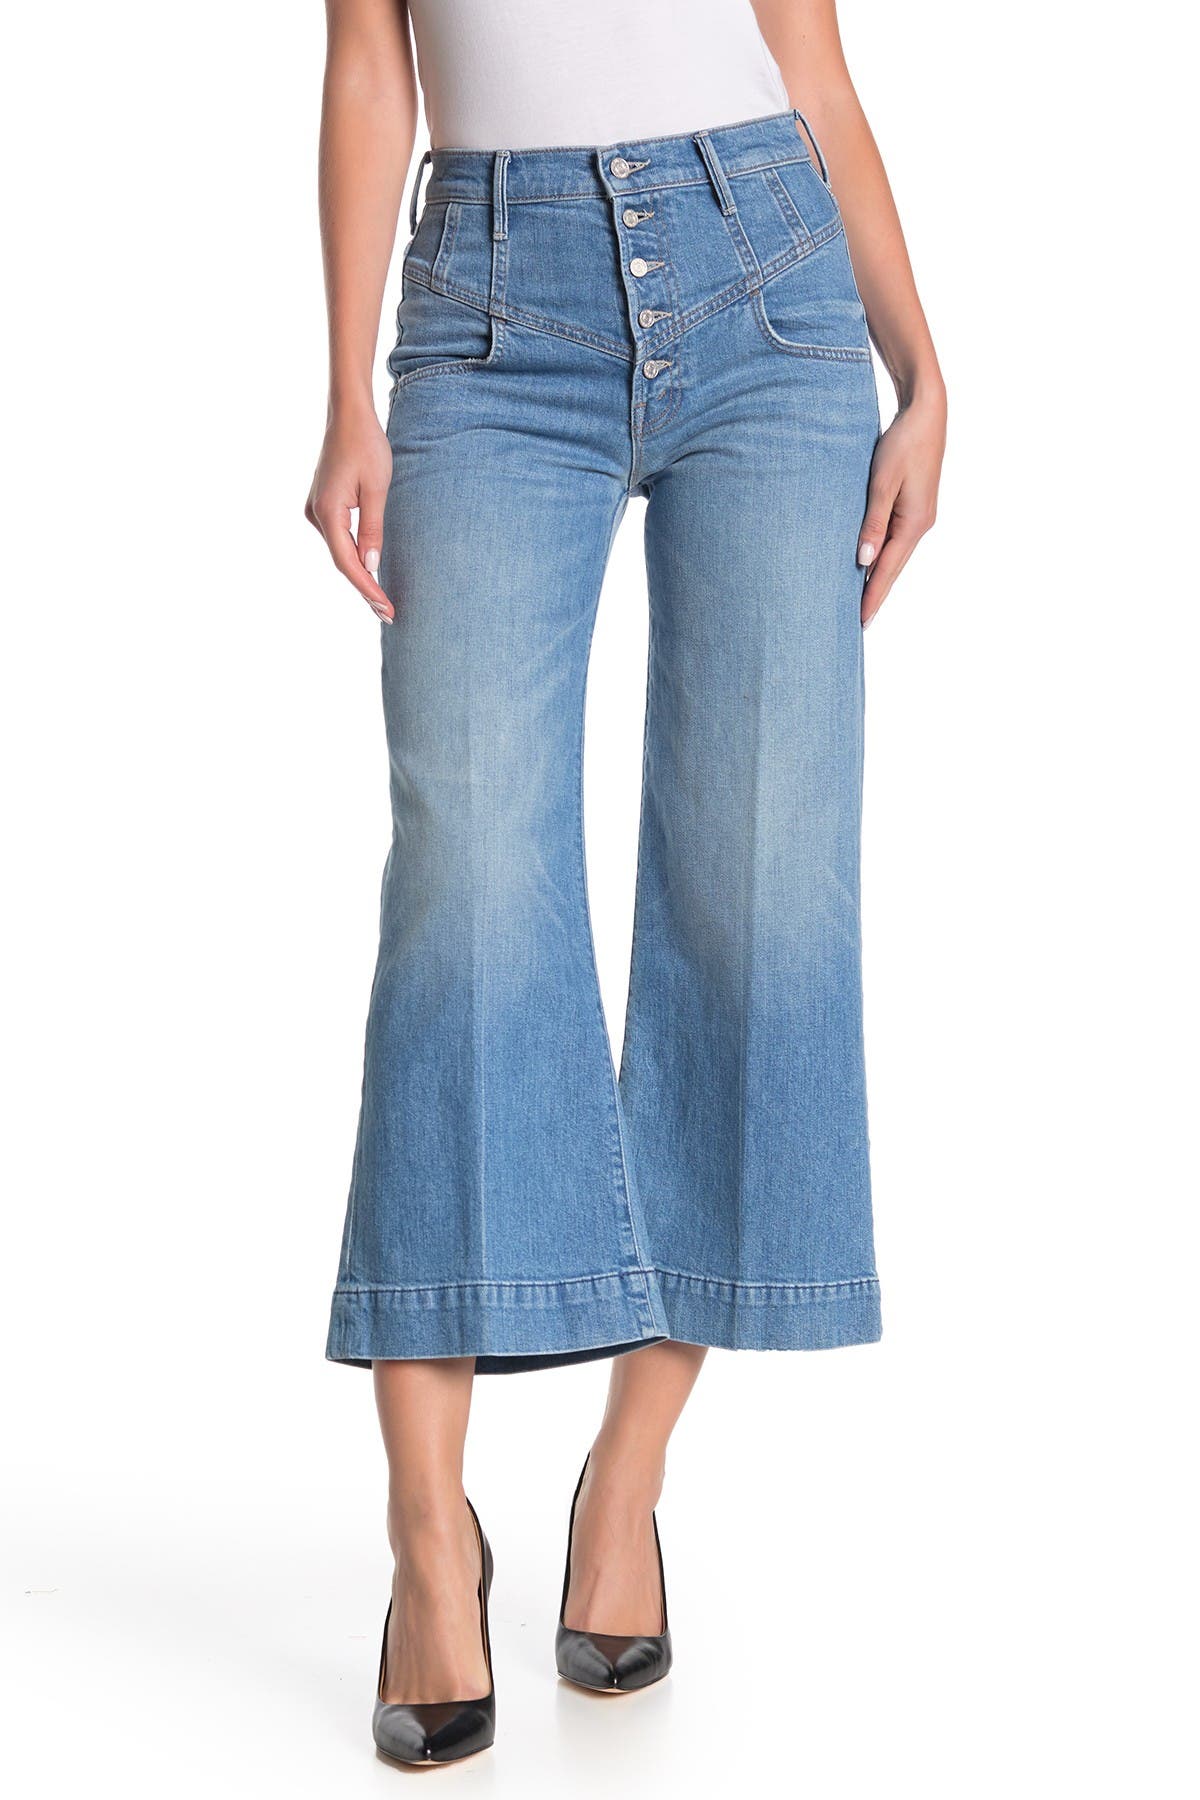 mother jeans nordstrom rack